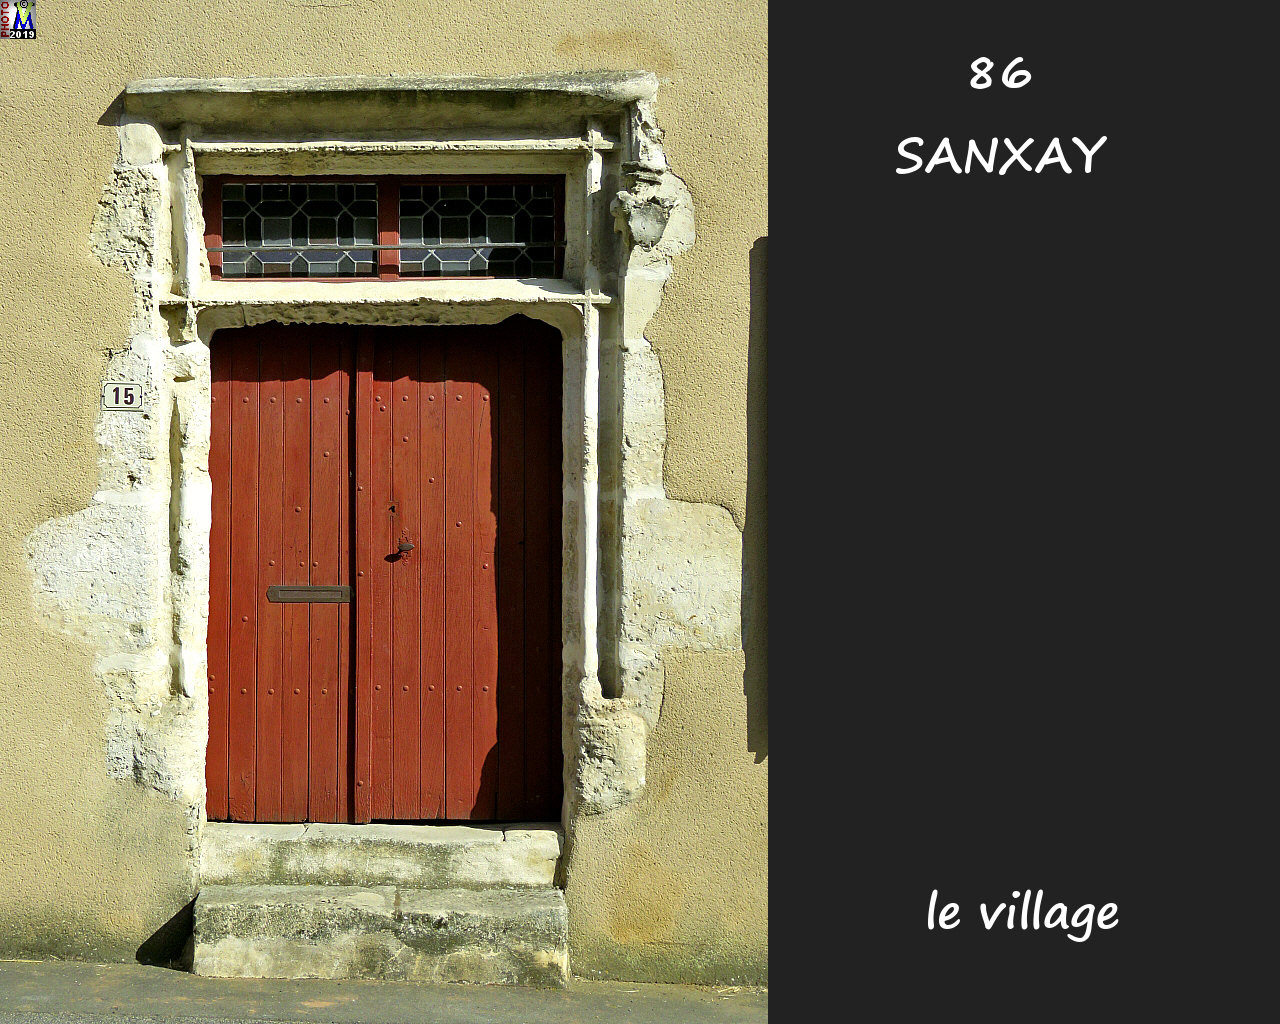 86SANXAY_village_1012.jpg